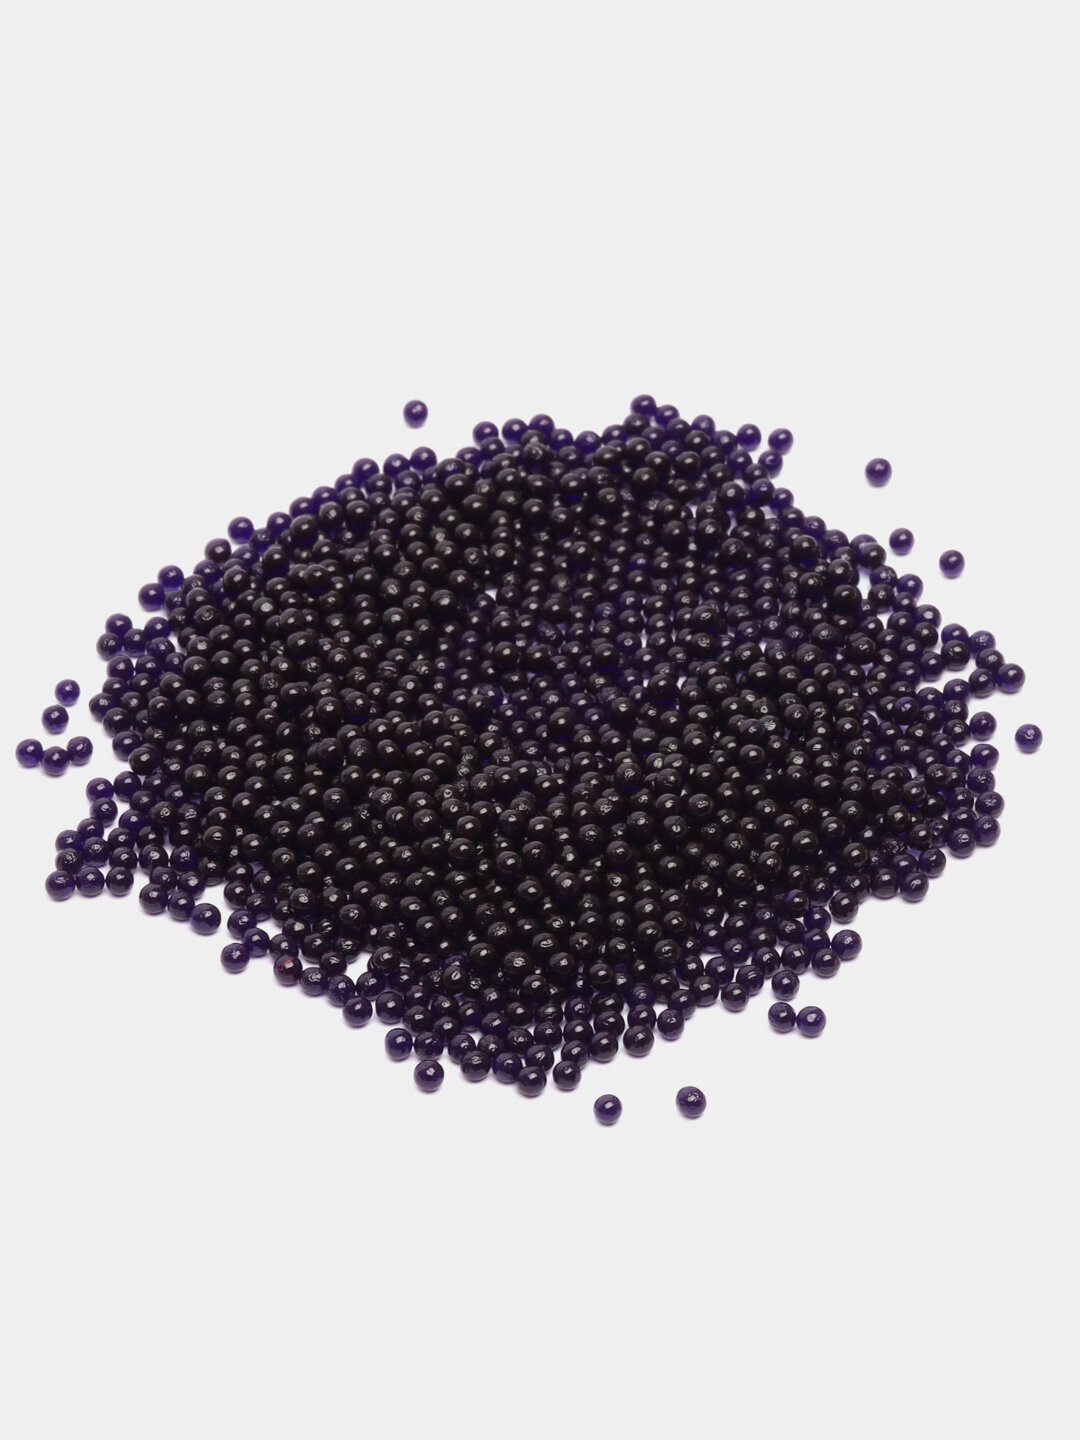 Гидрогелевые шарики для цветов (орбиз, аквагрунт), 20 г, фиолетовый